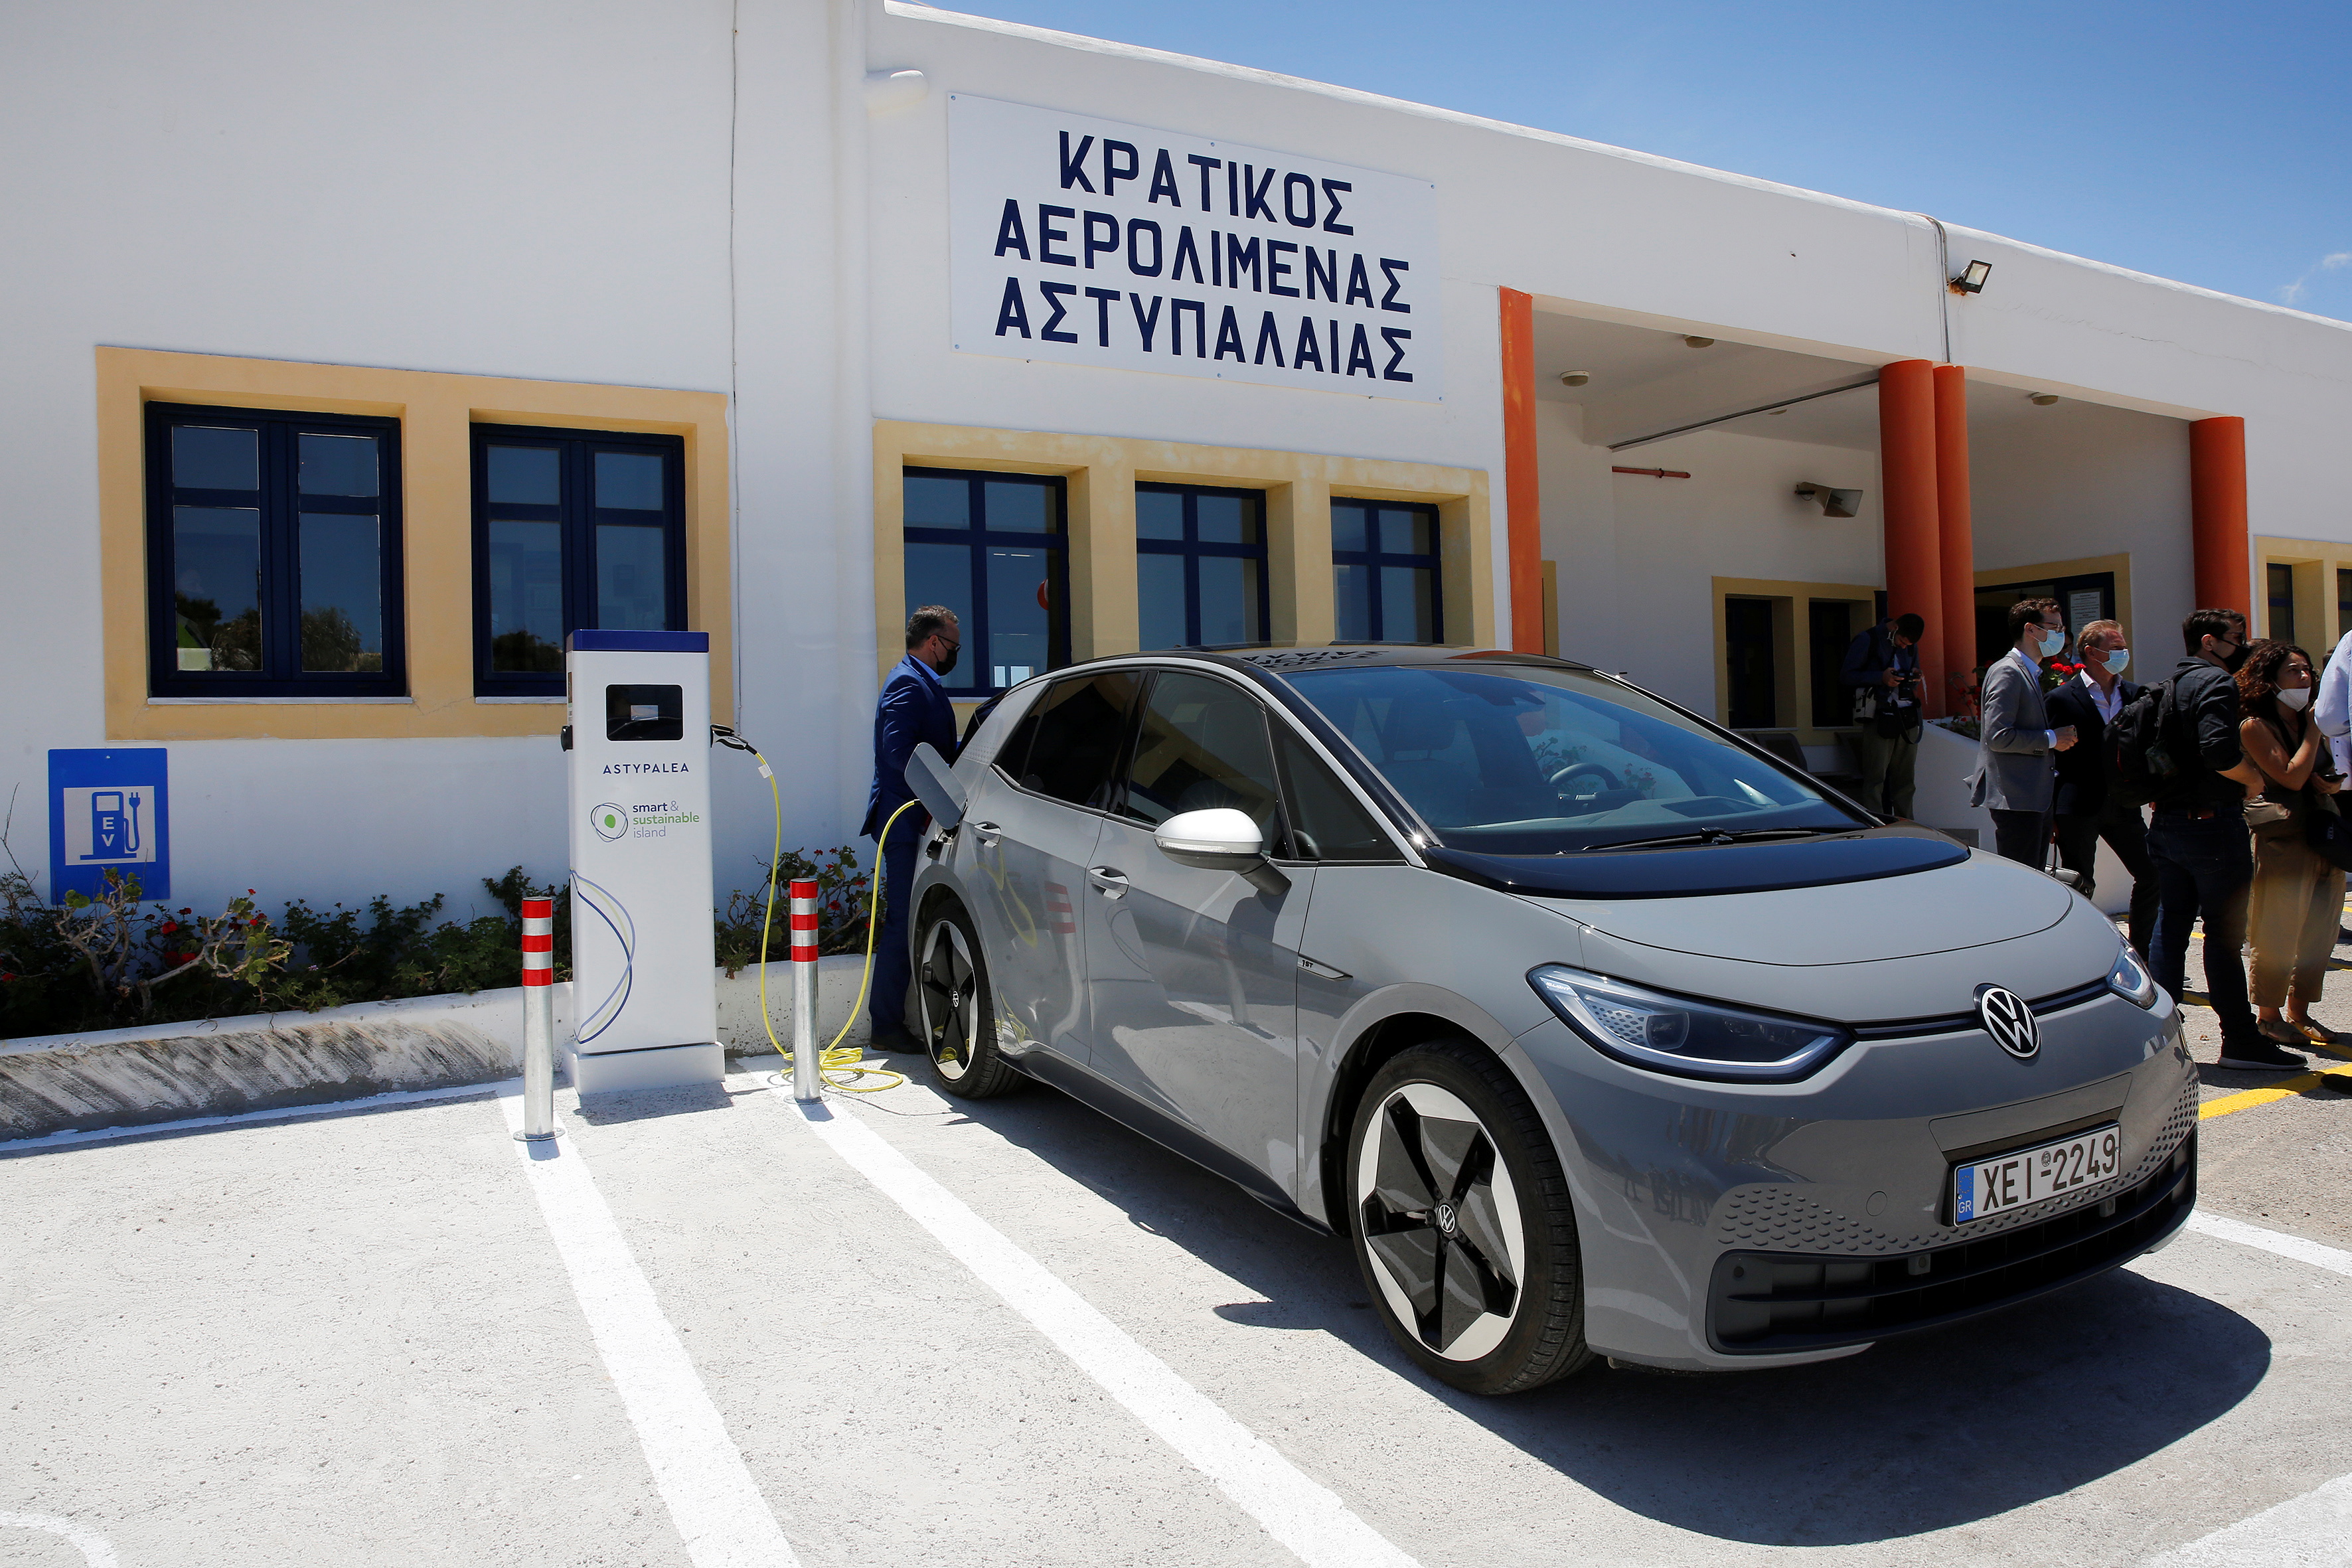 Se carga un automóvil eléctrico Volkswagen ID.4 en las instalaciones del aeropuerto de la isla de Astypalea, Grecia, el 2 de junio de 2021. Alexandros Vlachos / Pool vía REUTERS